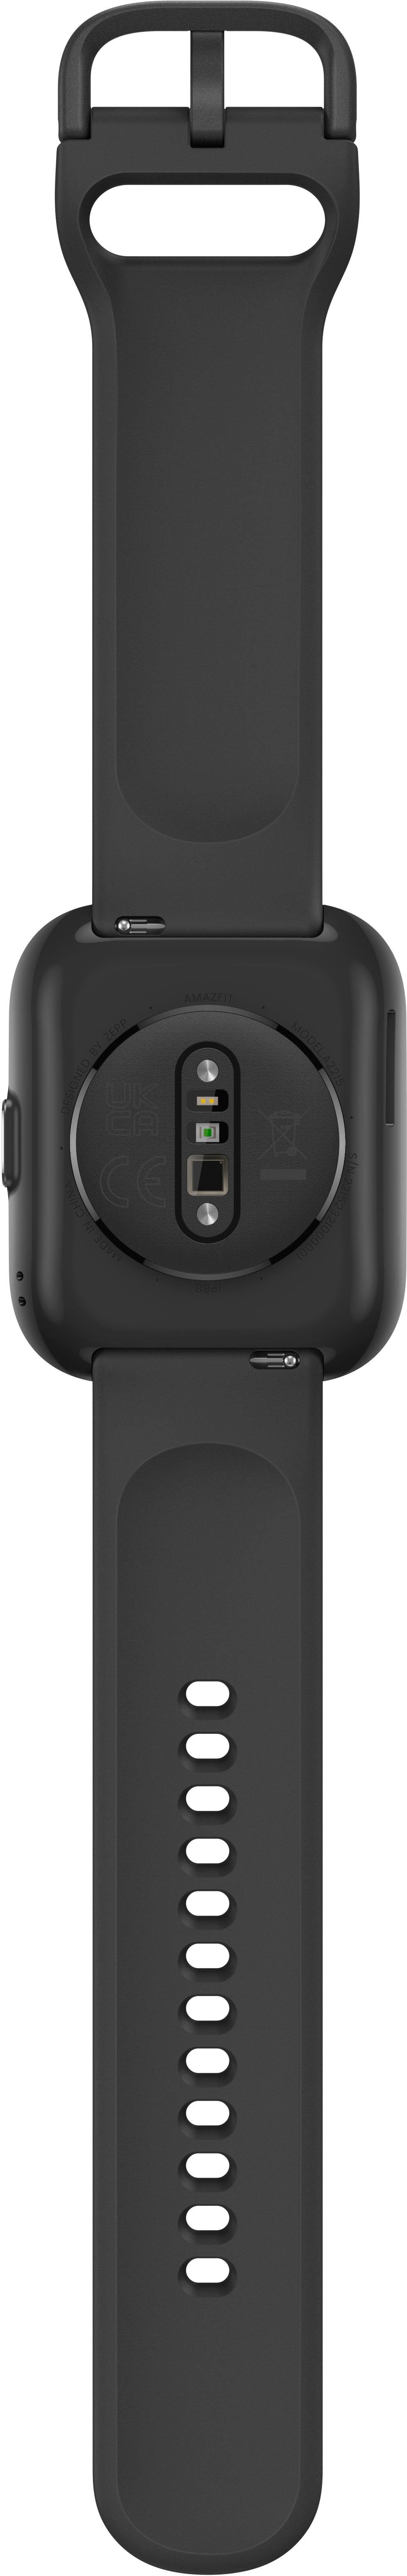 Amazfit - Bip 5 Smartwatch 49mm - Black_3